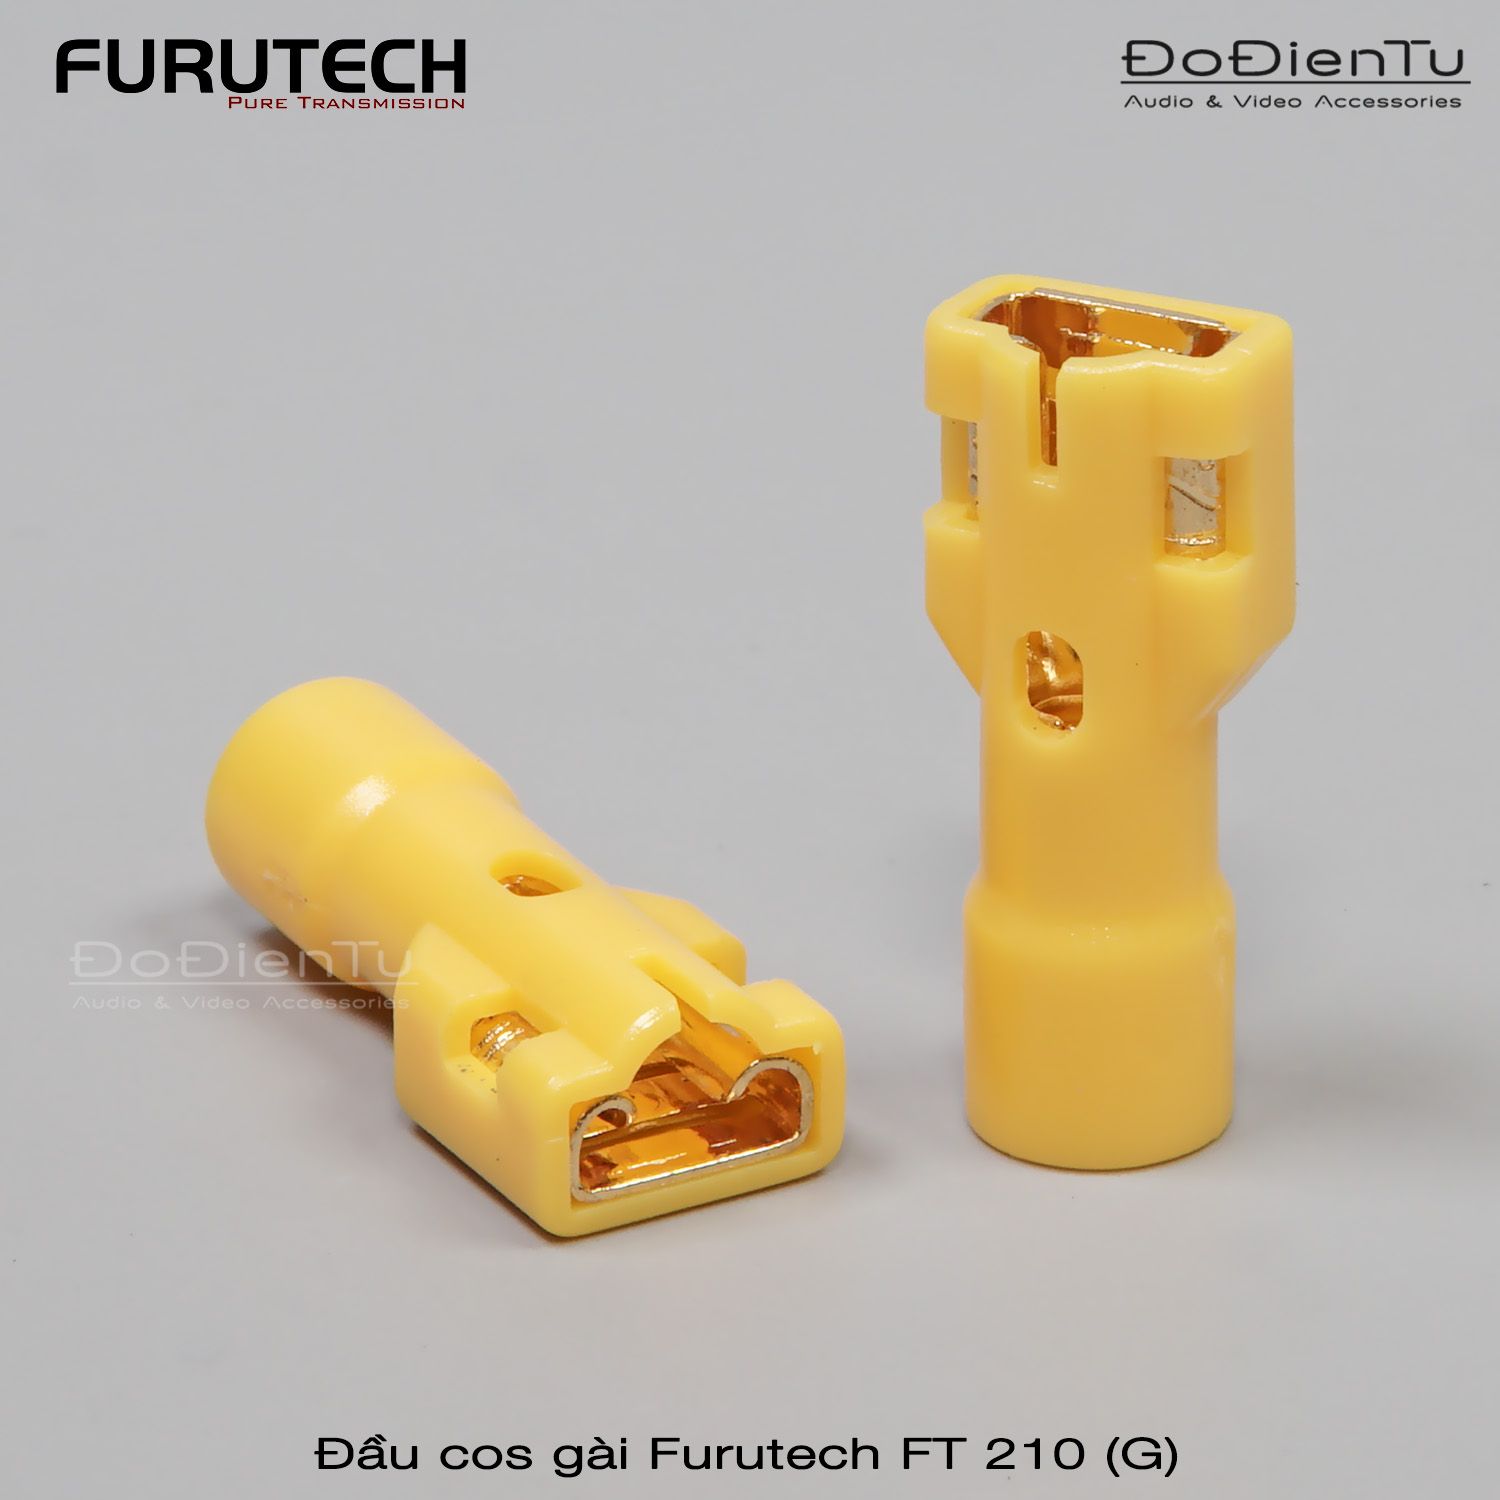 Furutech FT 210 (G)